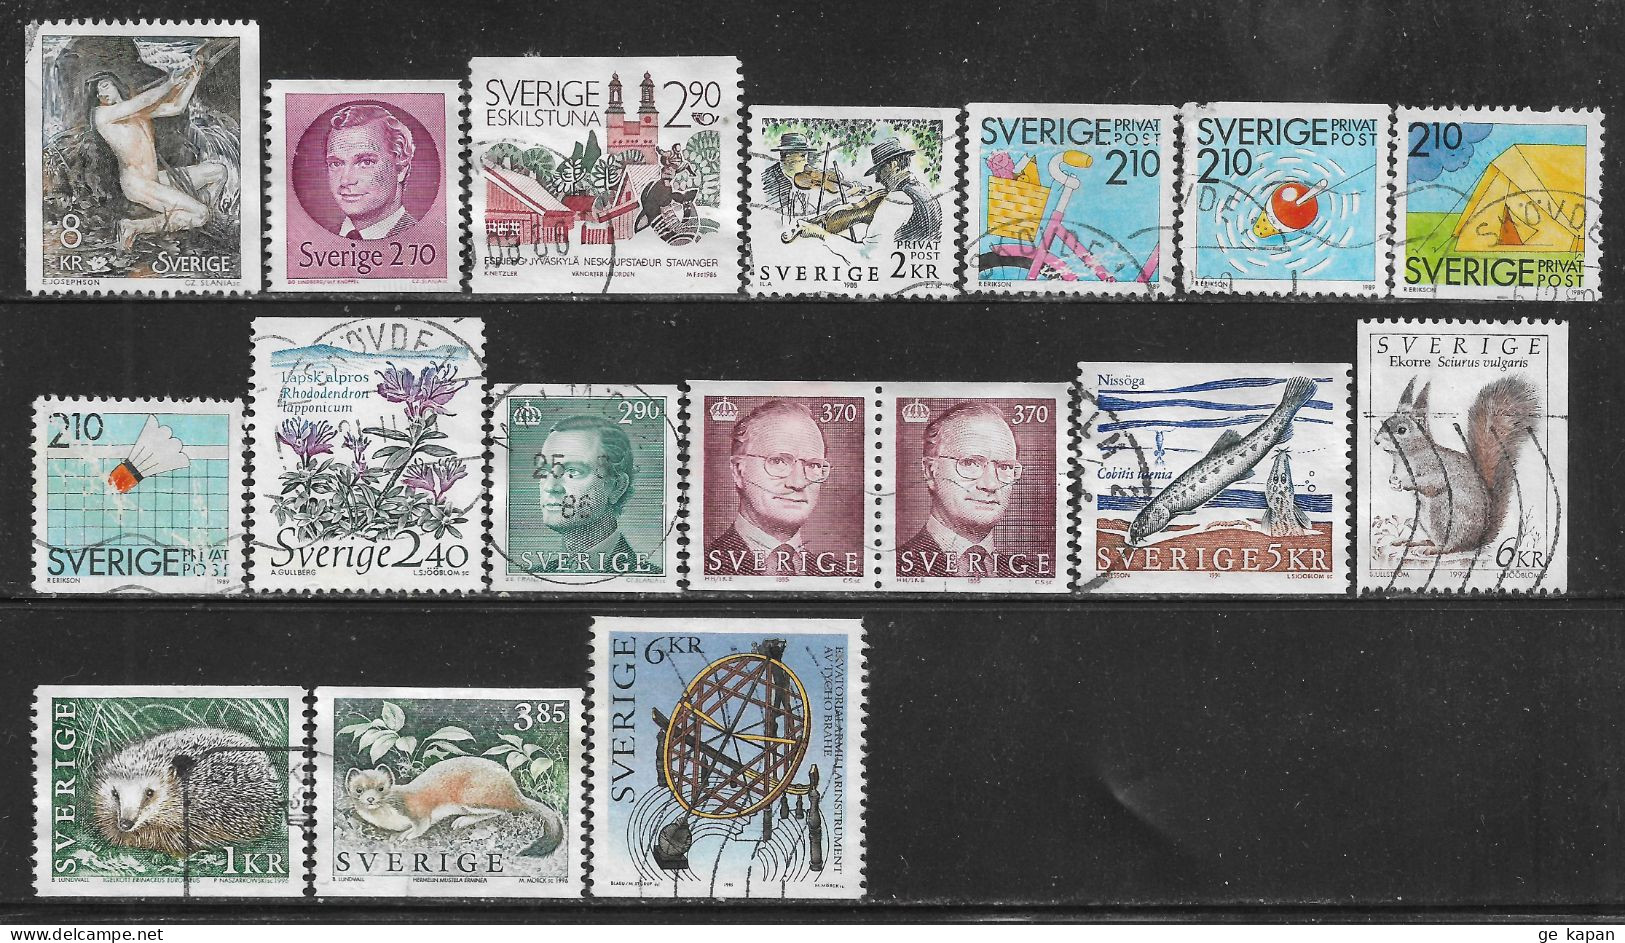 1980-96 SWEDEN 17 Used Stamps (Sc.# 1340,1372,1604,1685,1741,1743,1744,1746,1762,1785,1787,1869,1933,1926,1931) CV $7.95 - Usados